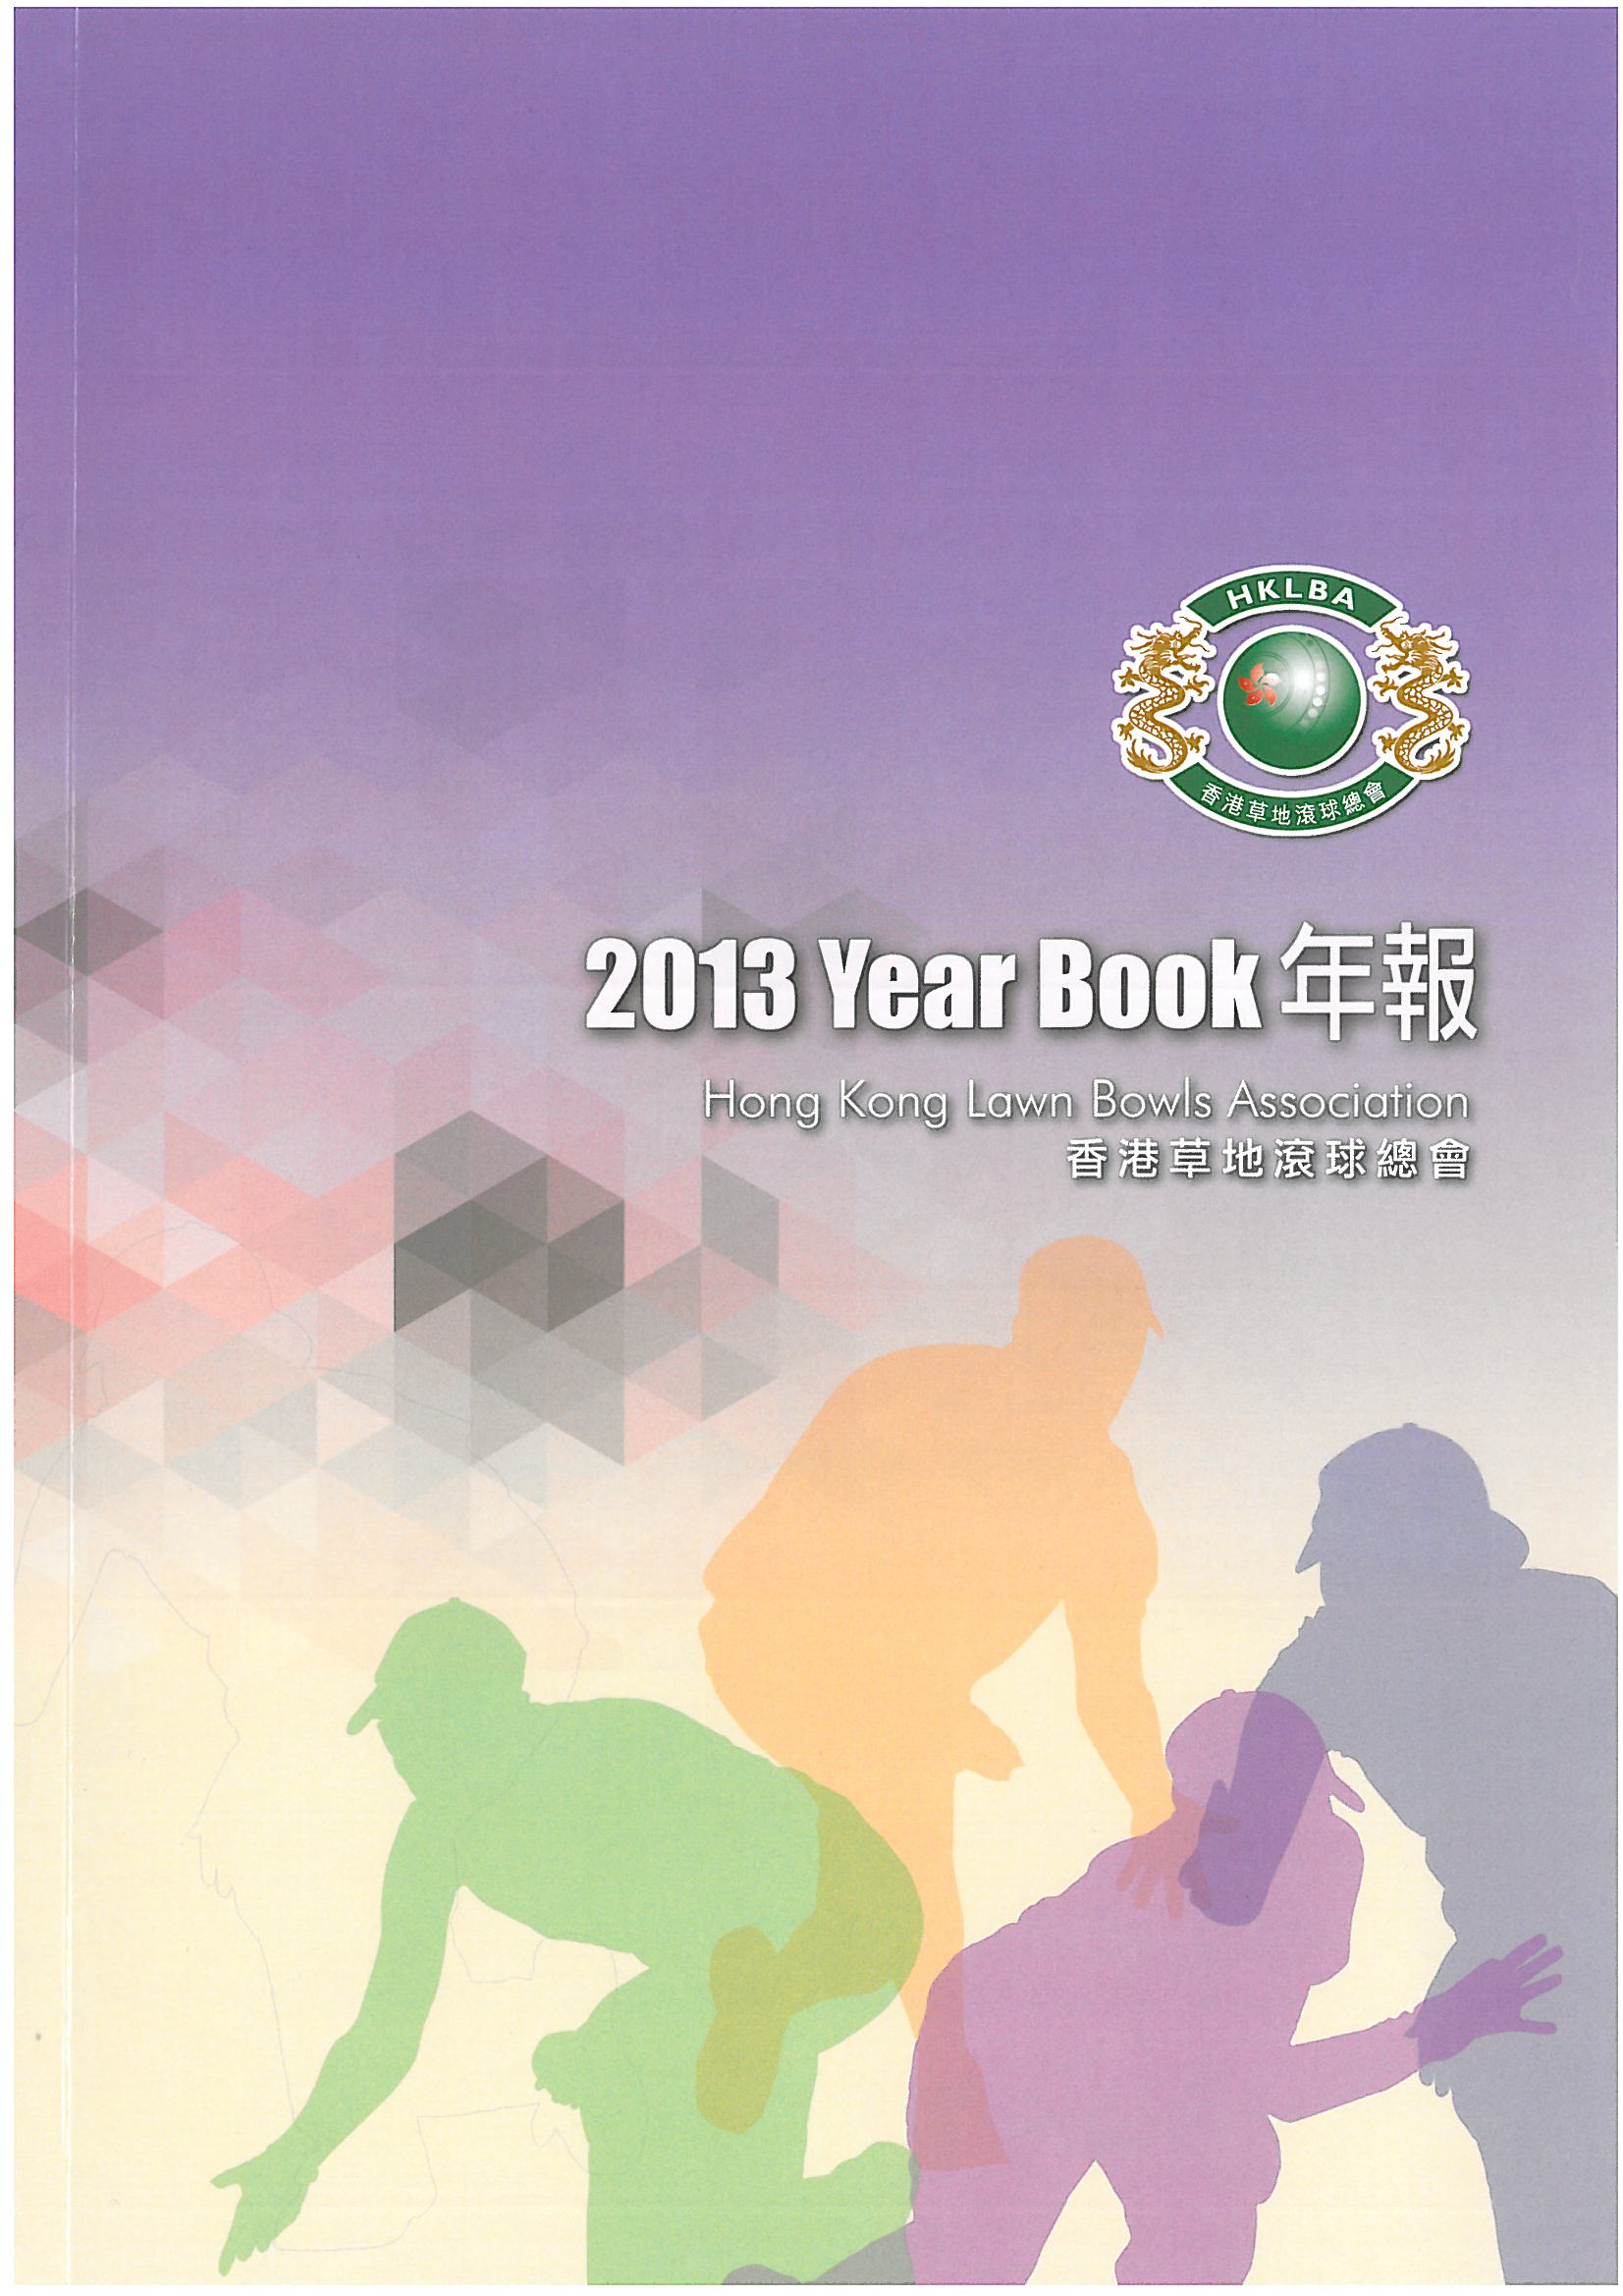 HKLBA 2013 Year Book